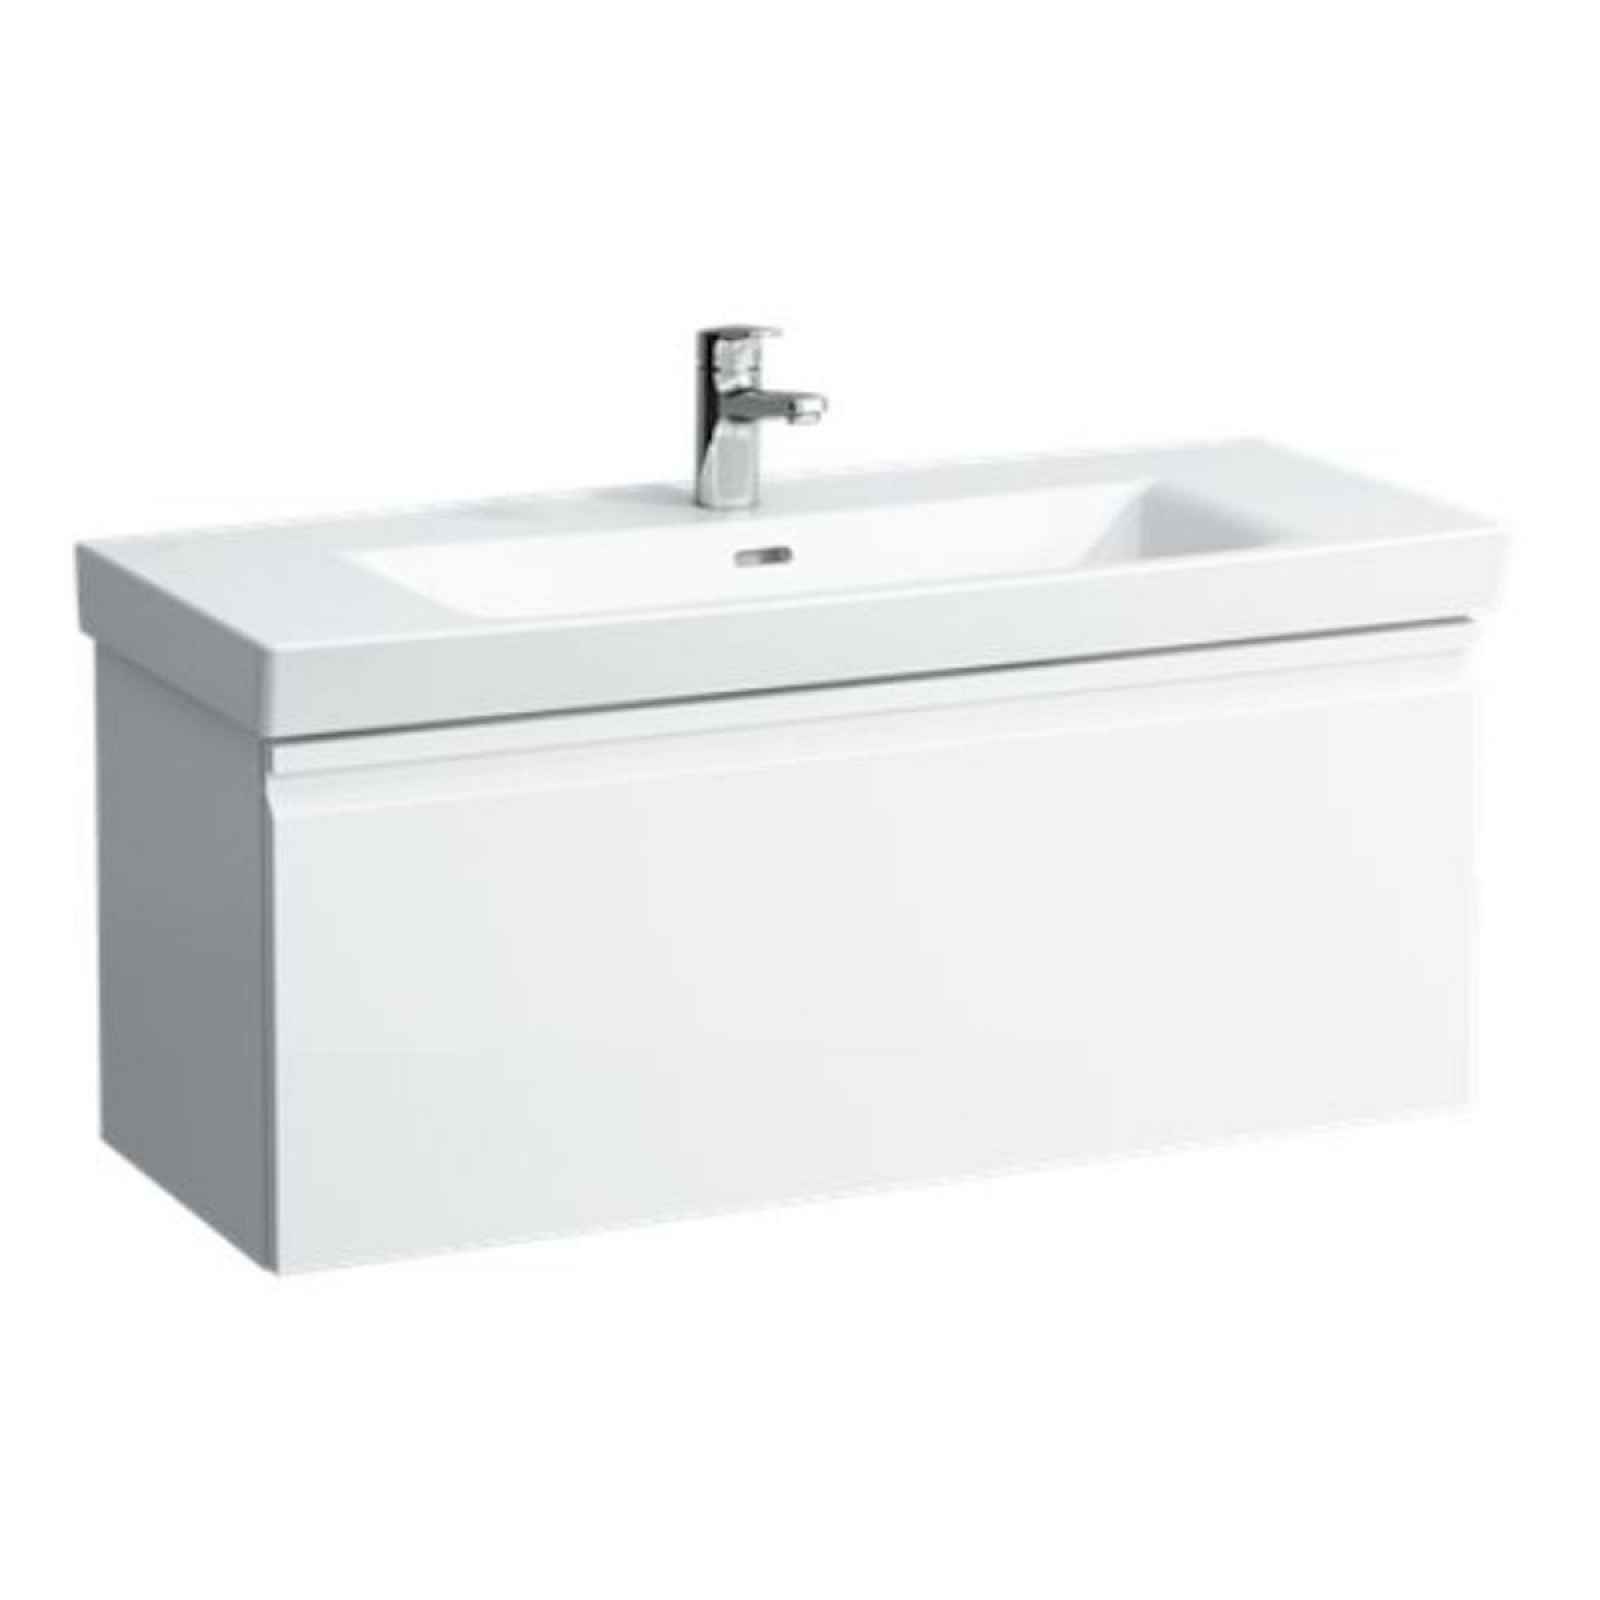 Koupelnová skříňka pod umyvadlo Laufen Pro 77x45x39 cm bílá lesk H4830610954751